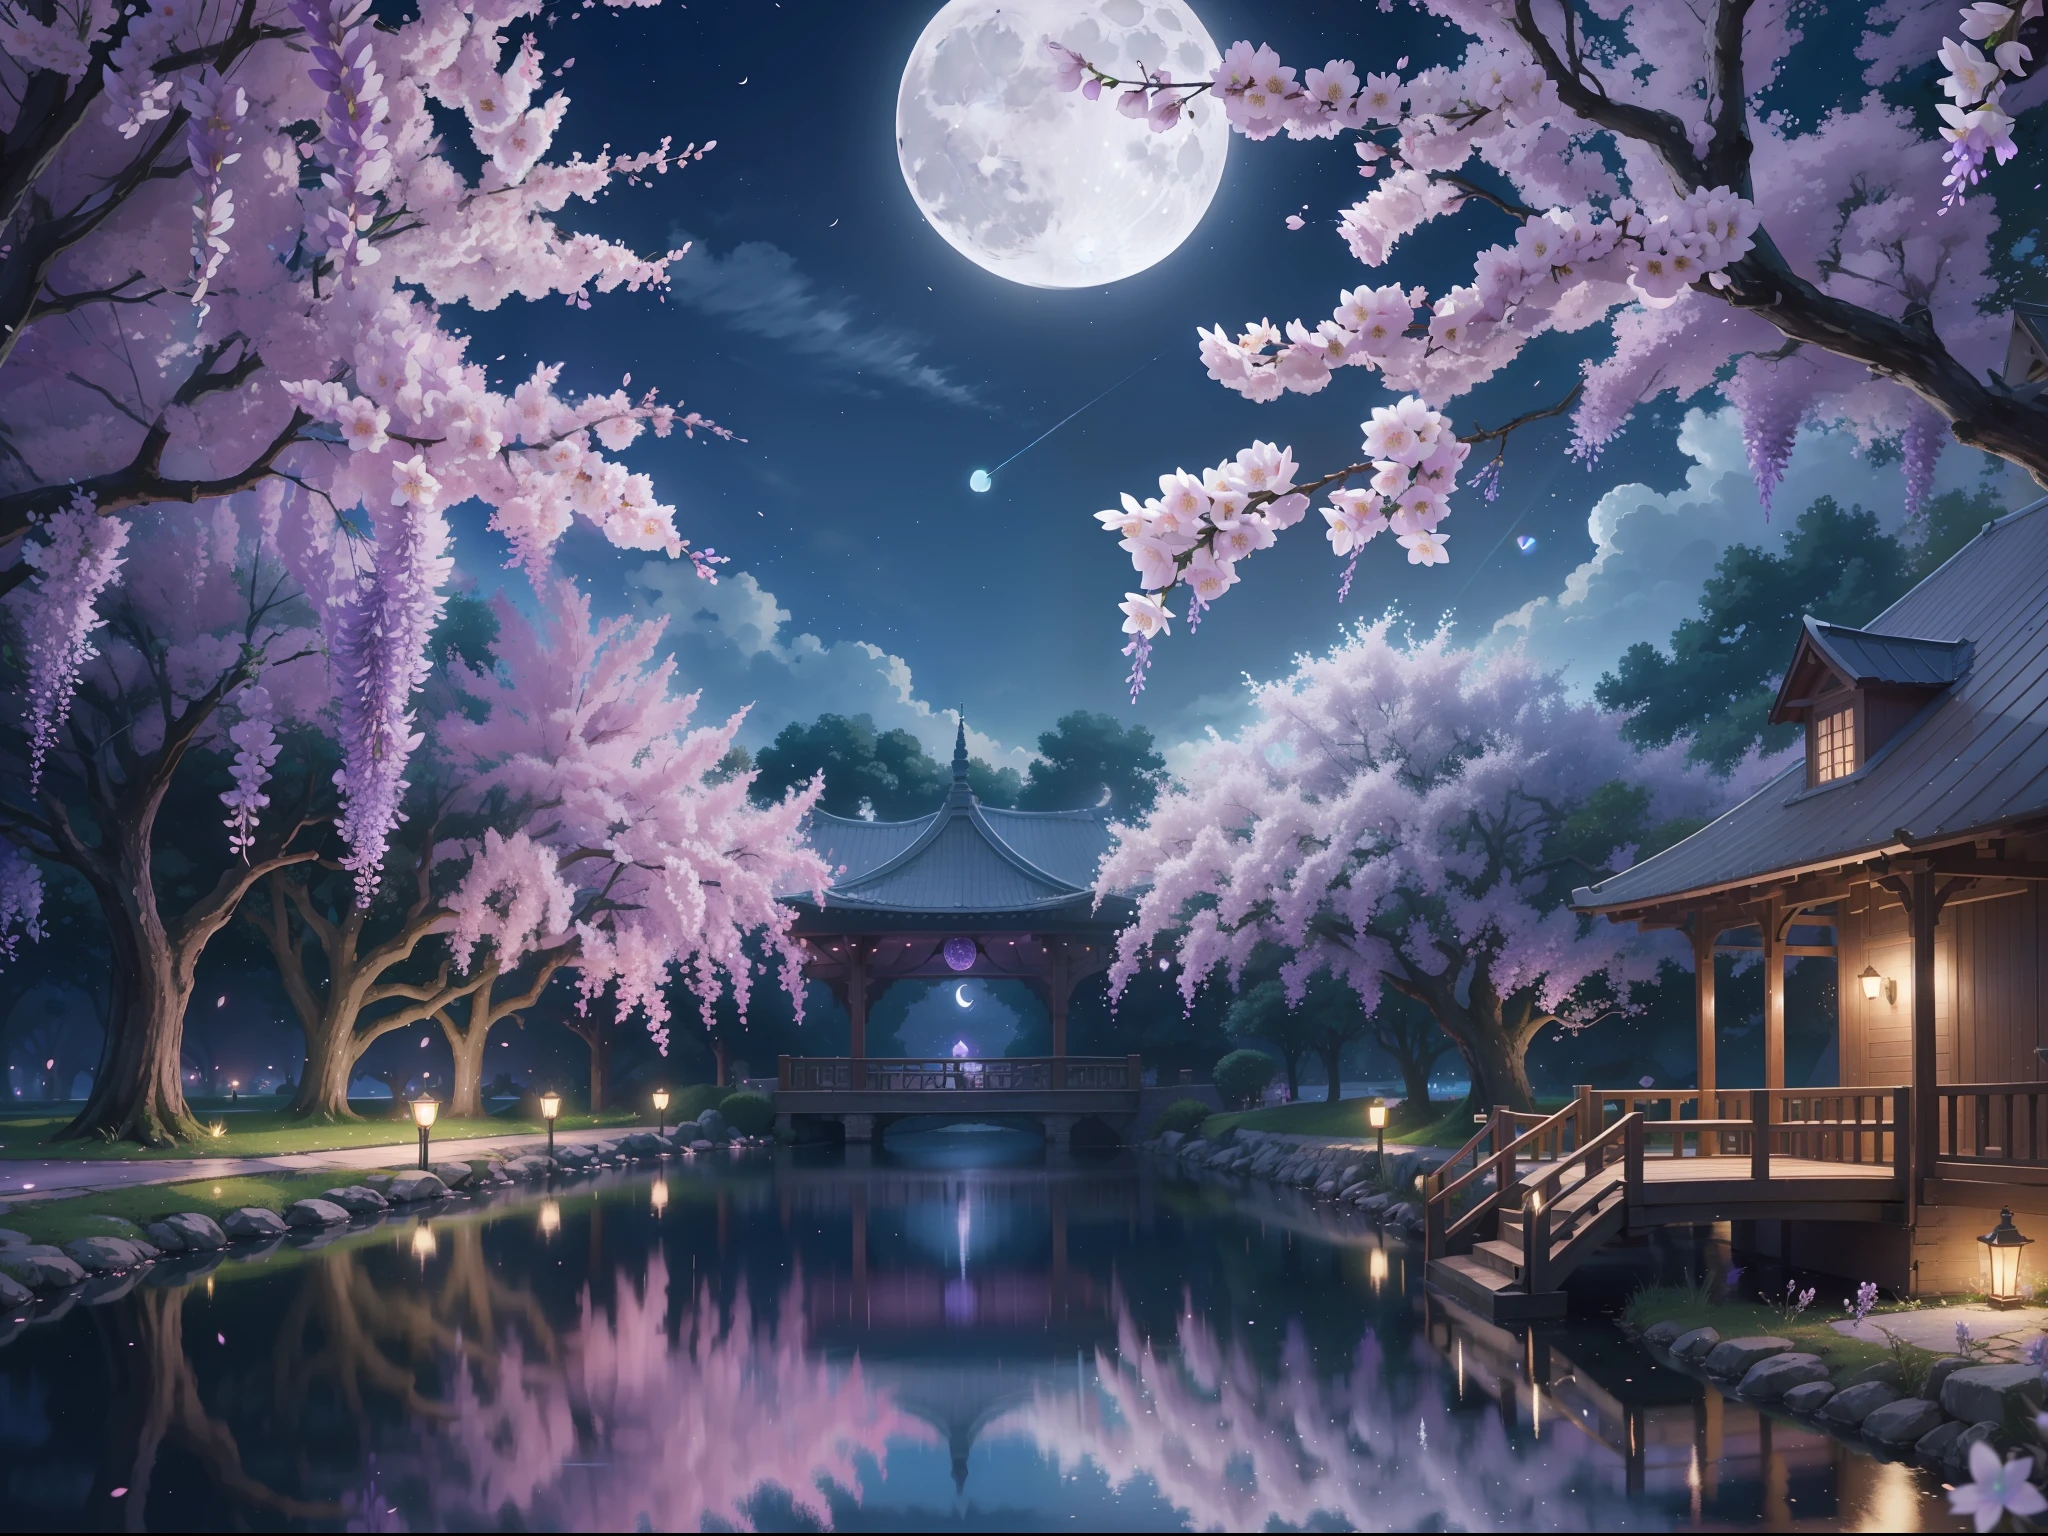 背景, CG, プノン, 夜, 月, 藤, 桜の花, 片側は空、もう一方は池, パノラマ, レイトレーシング, 反射光, 正反対, 8k, 傑作, 最高品質, 高品質, 細部までこだわった, 超詳細, 高解像度, 超高解像度